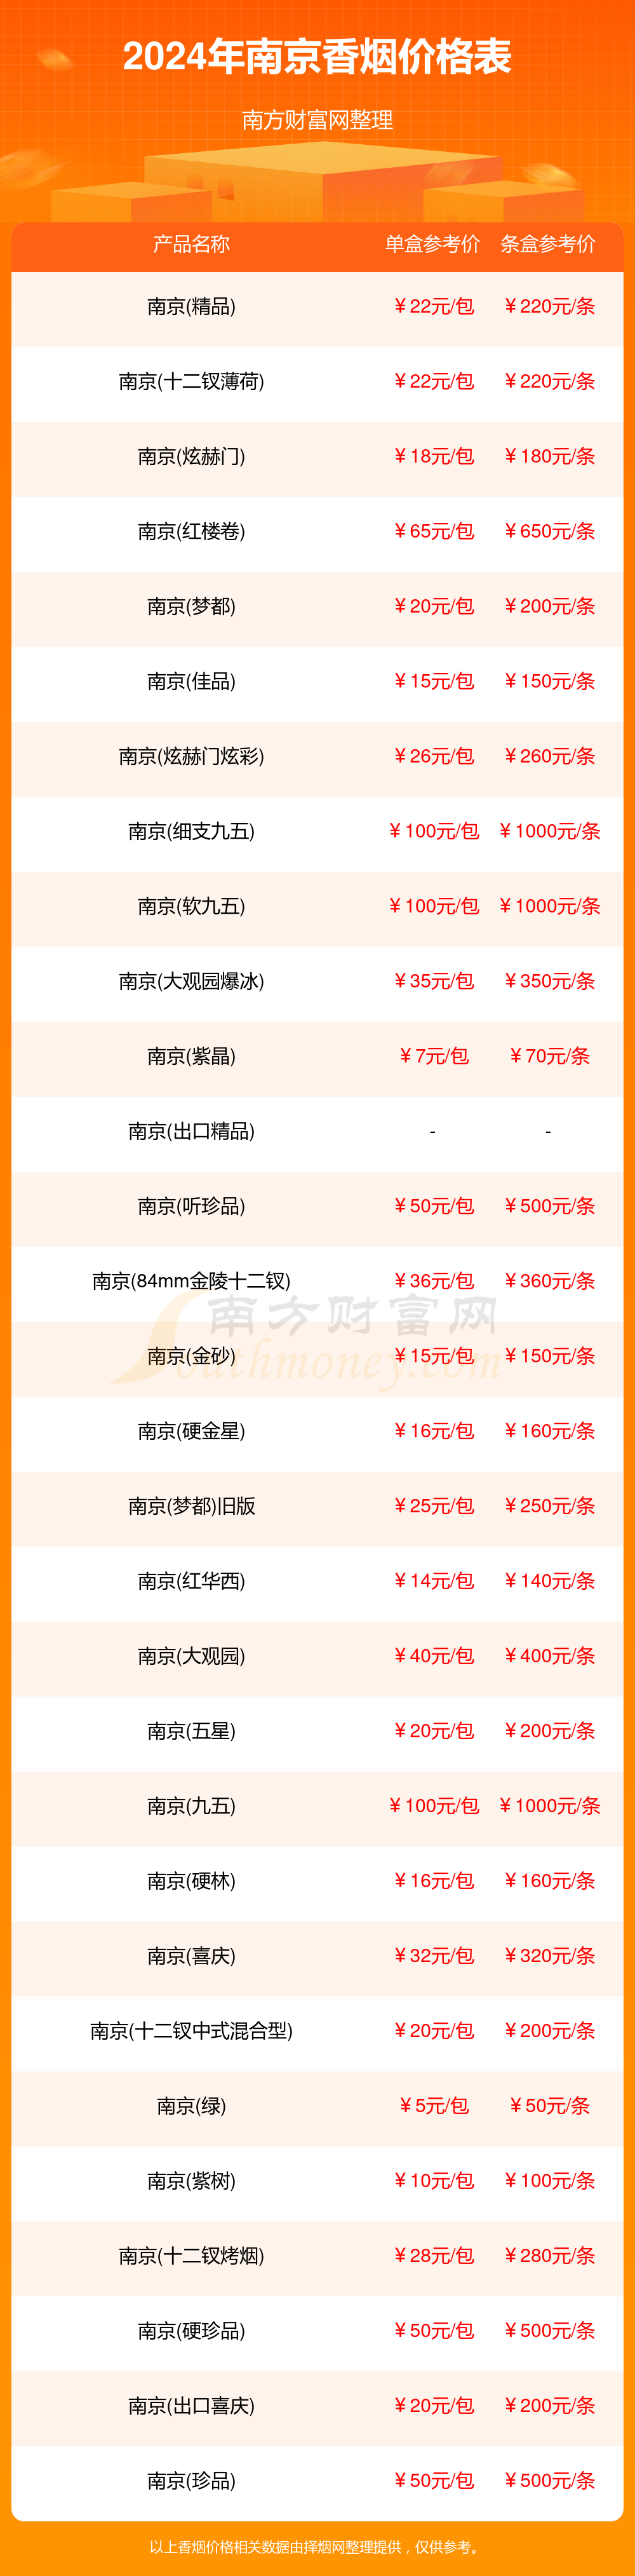 南京香烟系列价格表图片